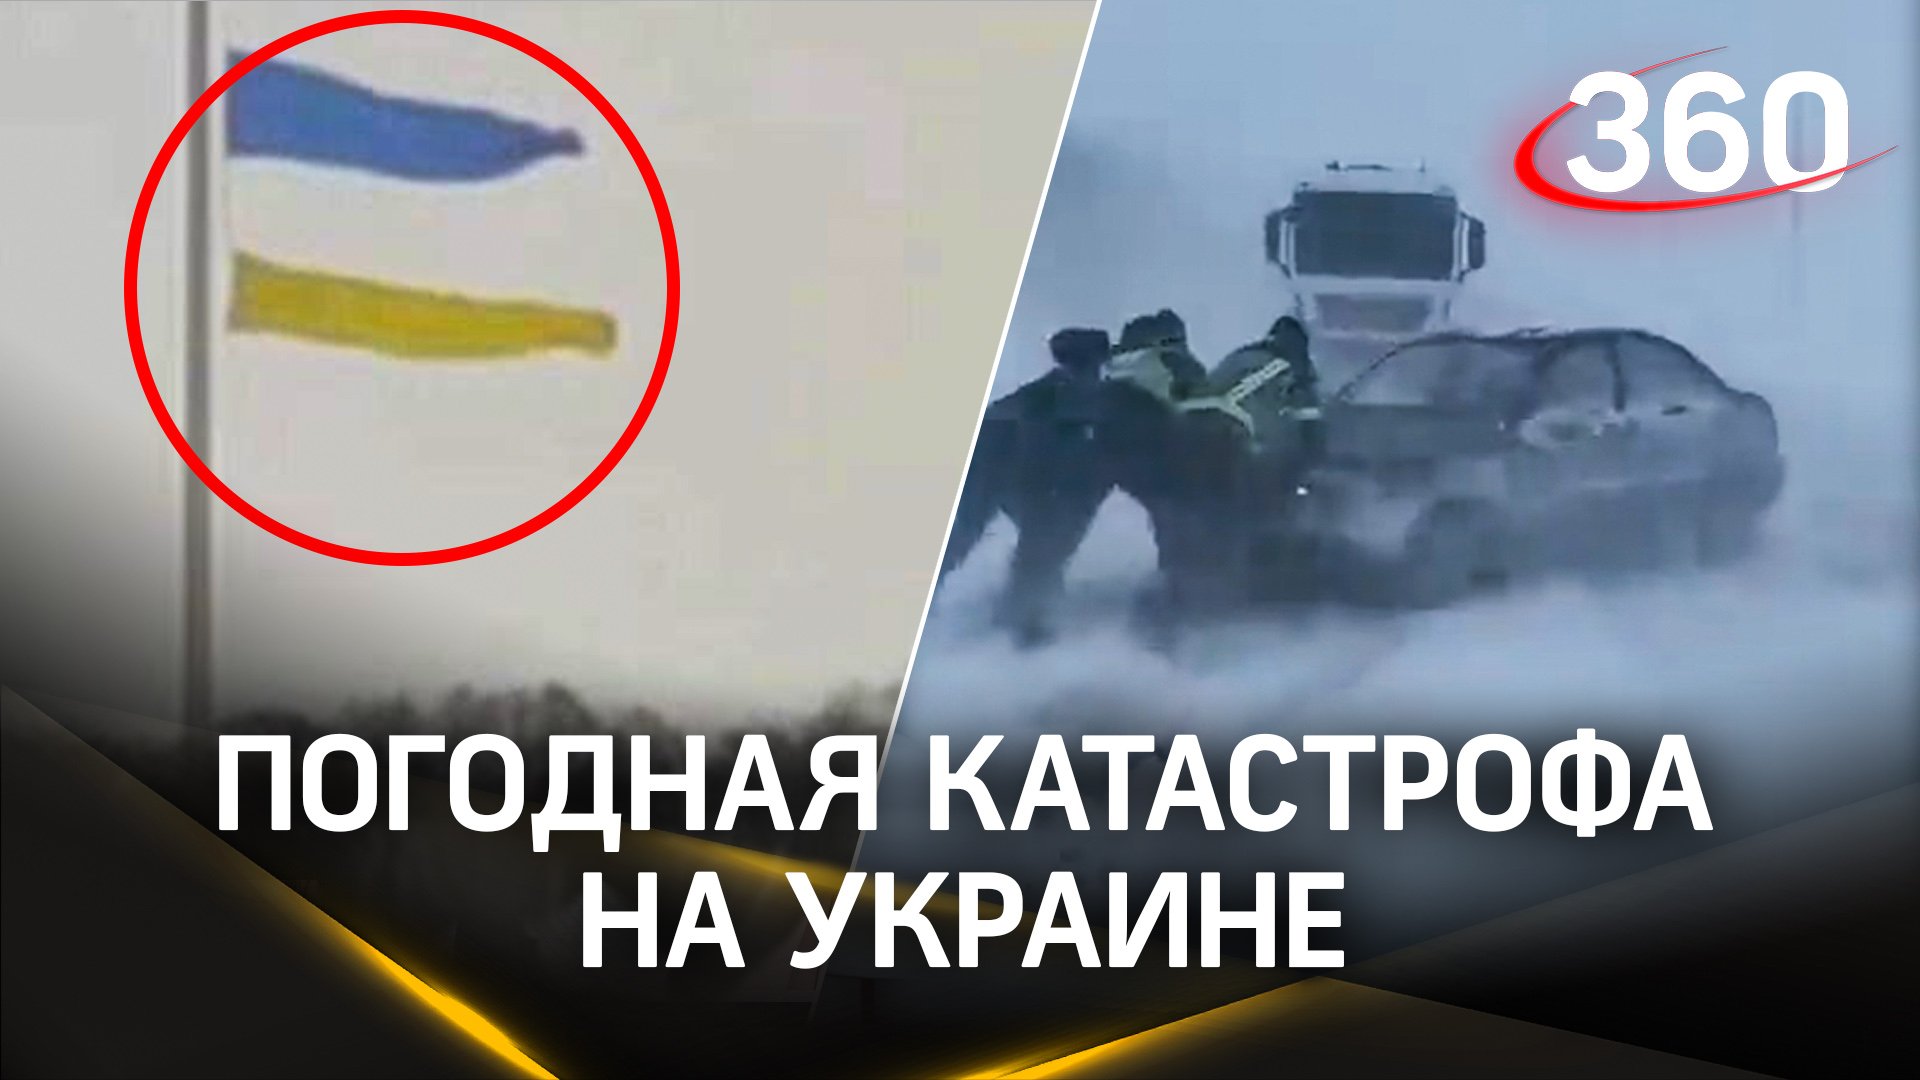 ЖКХ-погодная катастрофа хуже военной и добьет Украину? Почему Прапор порвало на британский флаг?